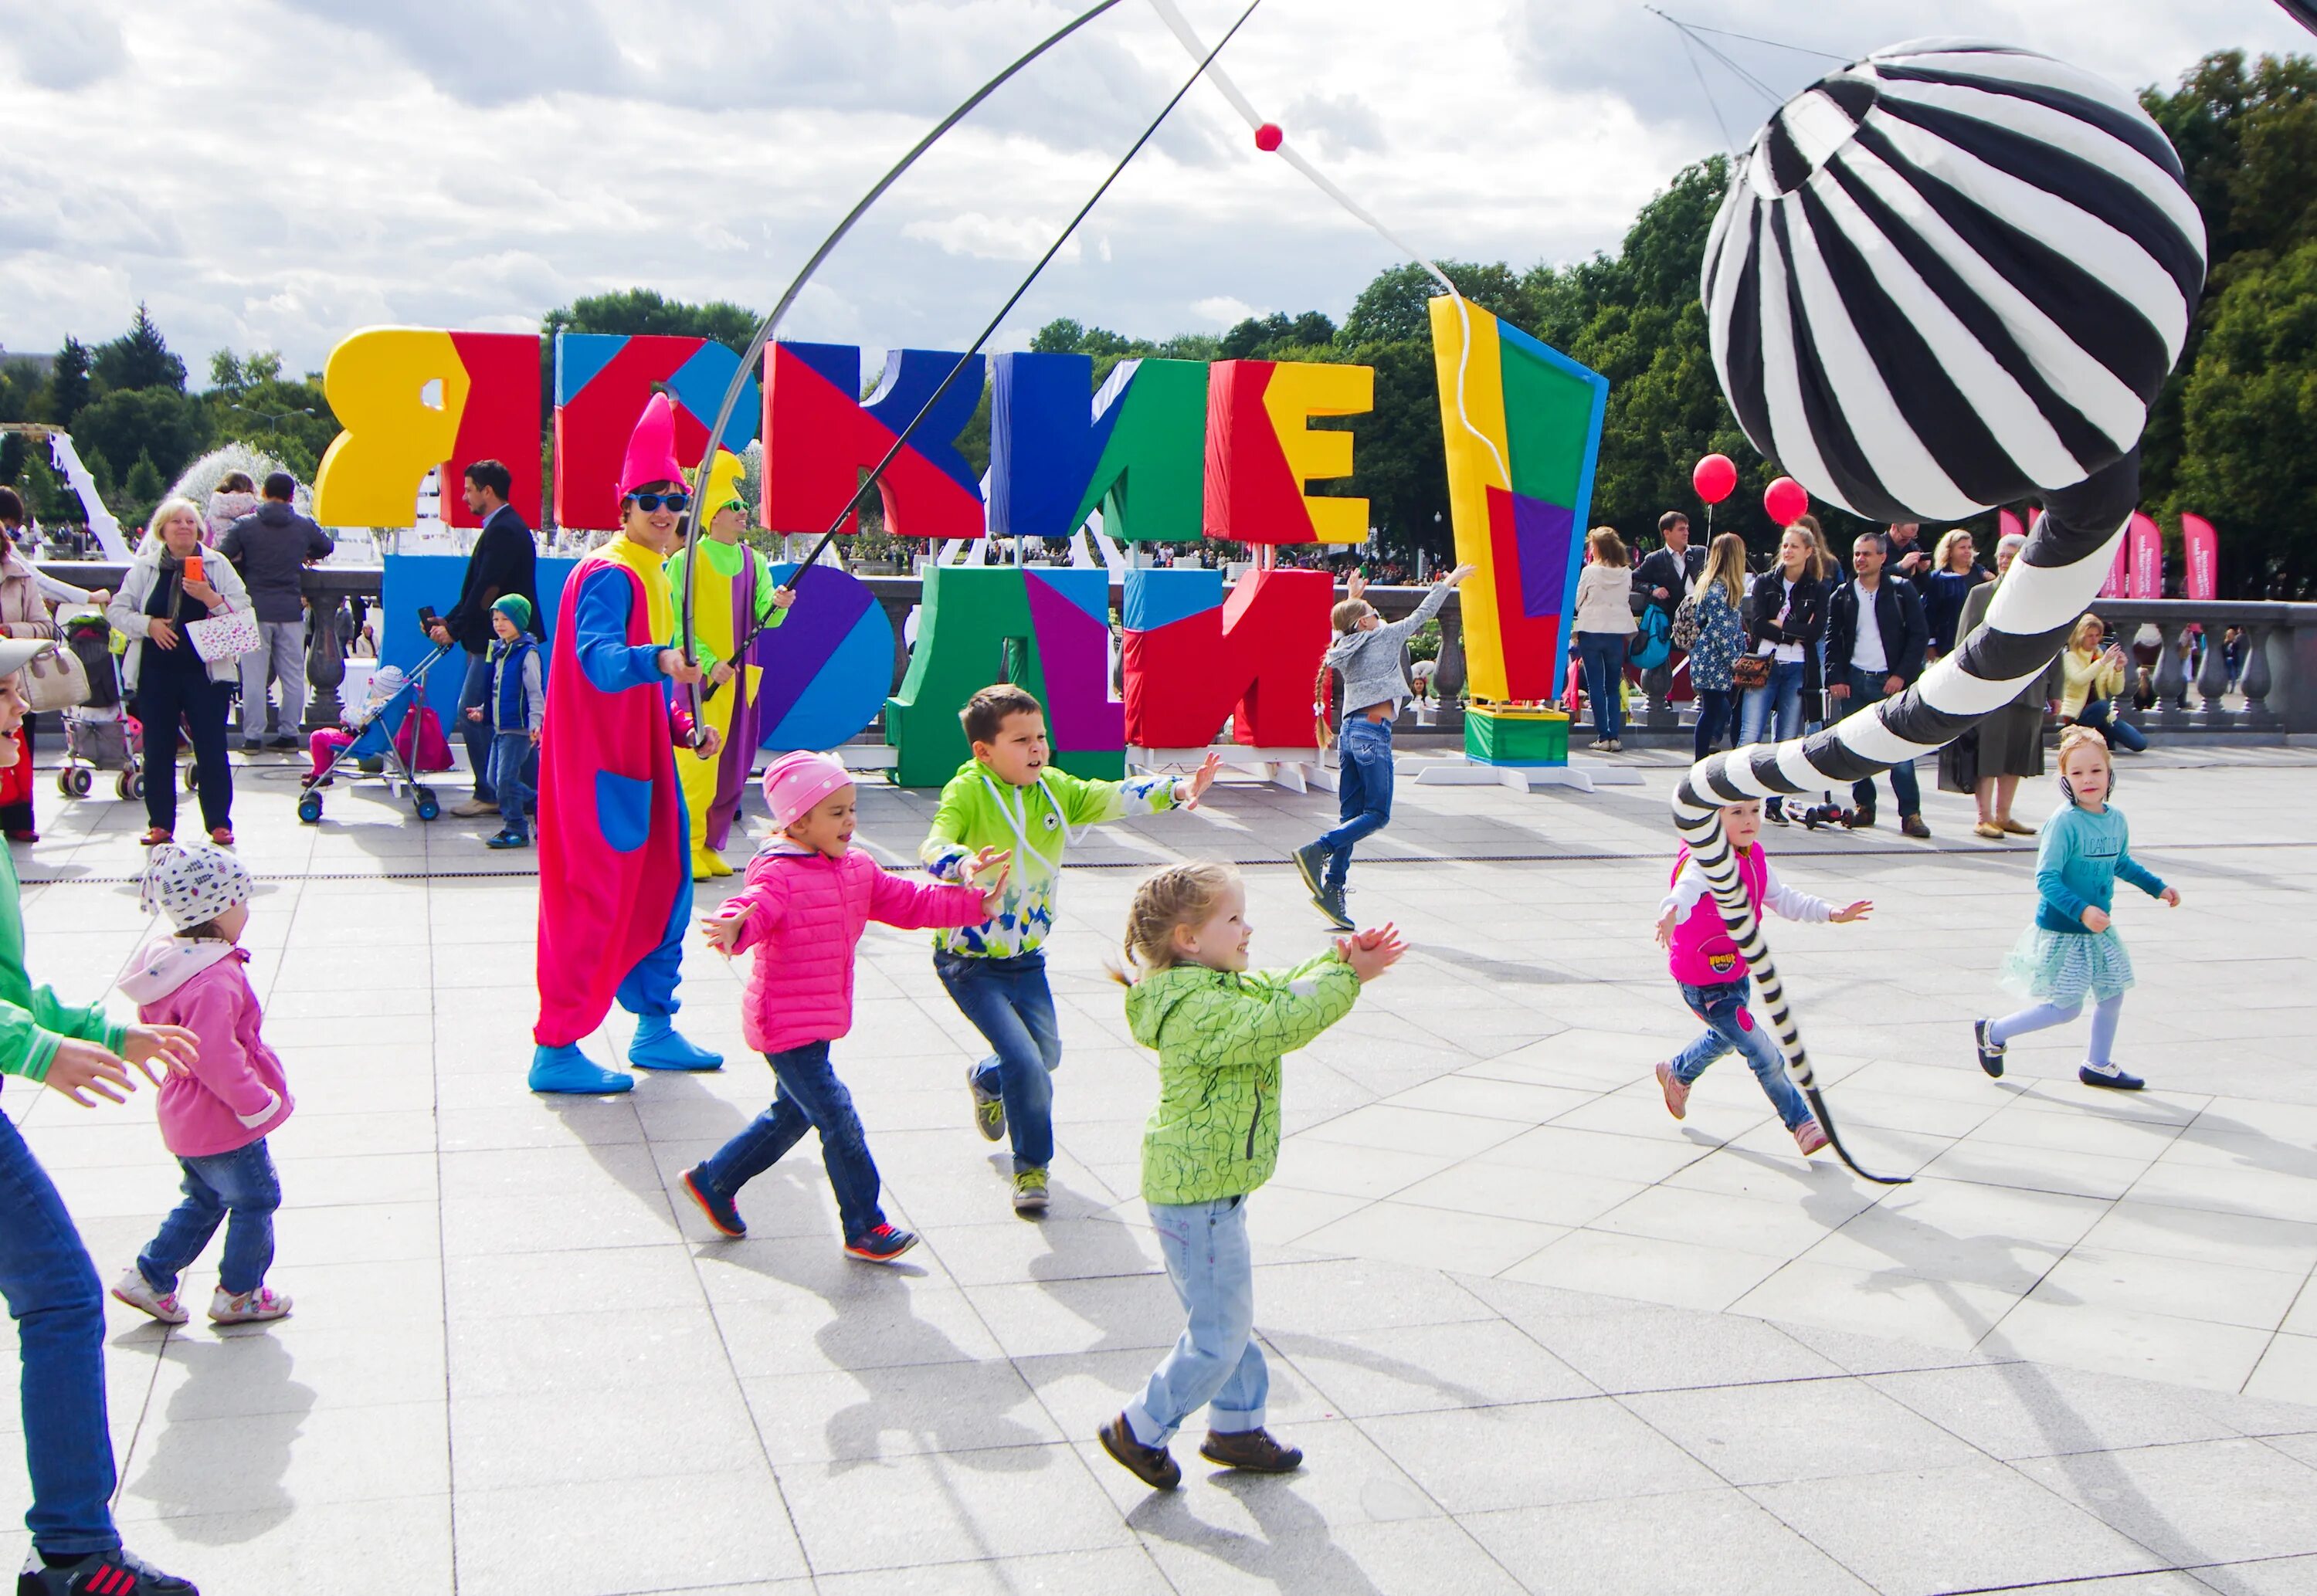 Открытие развлечений. Творческий фестиваль «яркие люди» в «Музеоне». Праздник в парке. Развлекательные площадки для детей. Интерактивные площадки для детей на празднике.